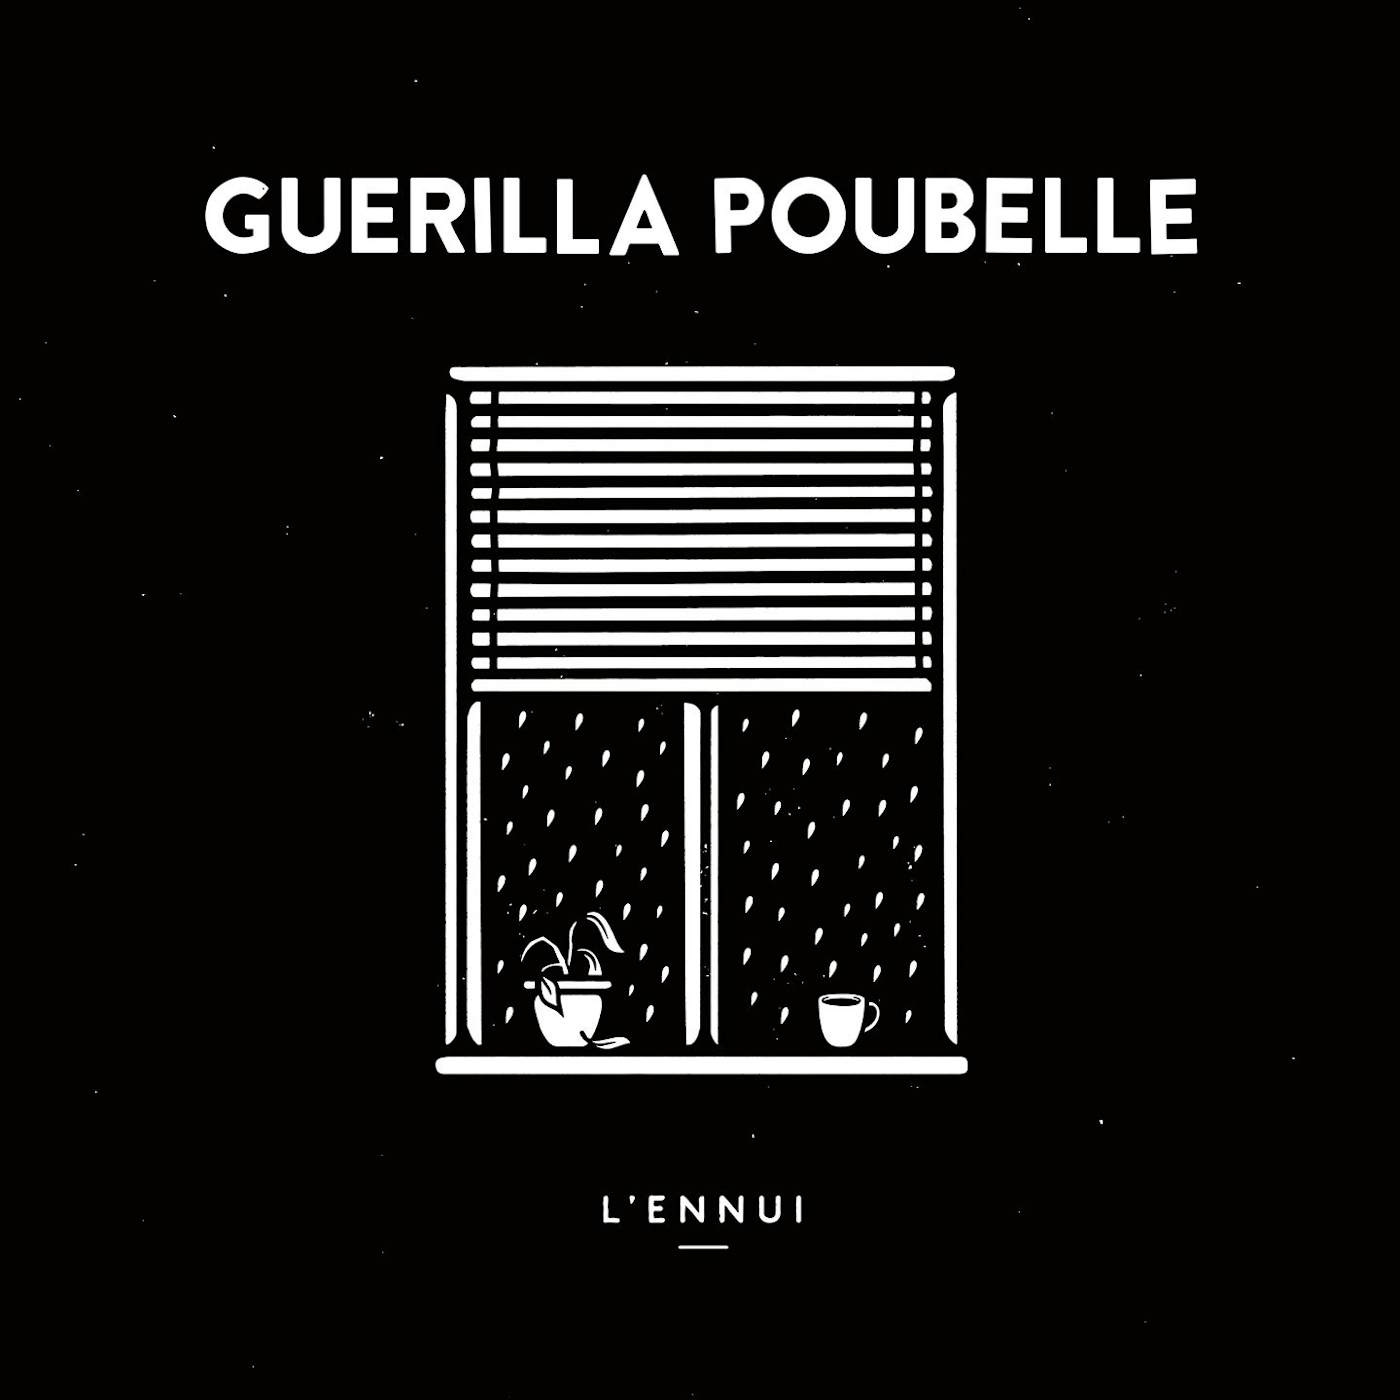 Guerilla Poubelle / L'ennui - LP Vinyl + CD